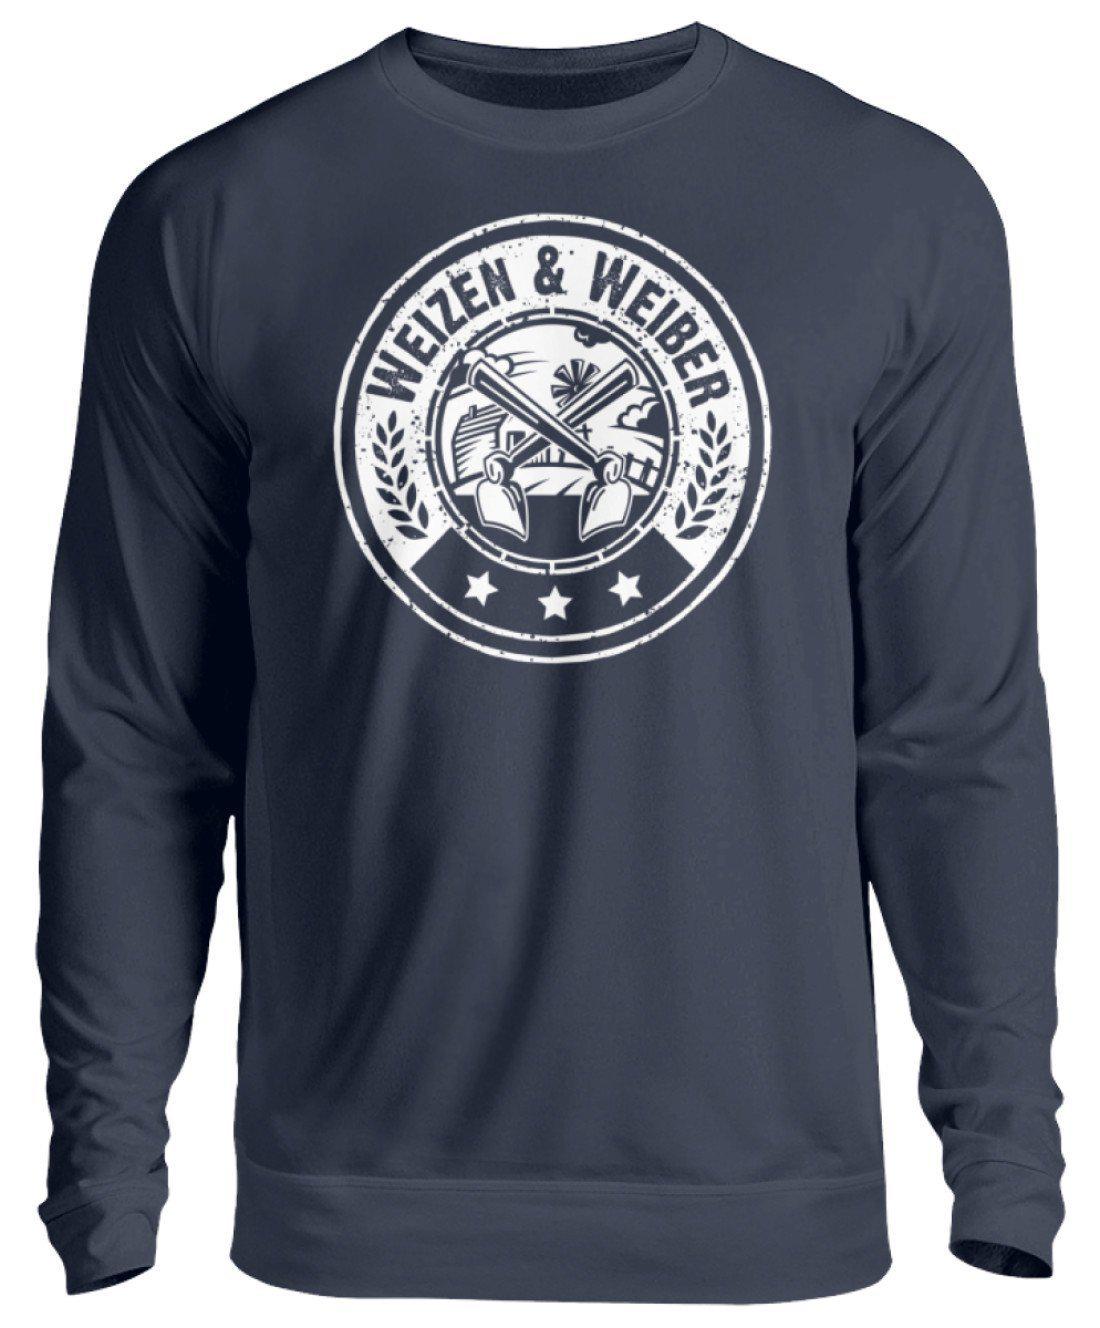 Weizen & Weiber · Unisex Sweatshirt Pullover-Unisex Sweatshirt-Oxford Navy-S-Agrarstarz